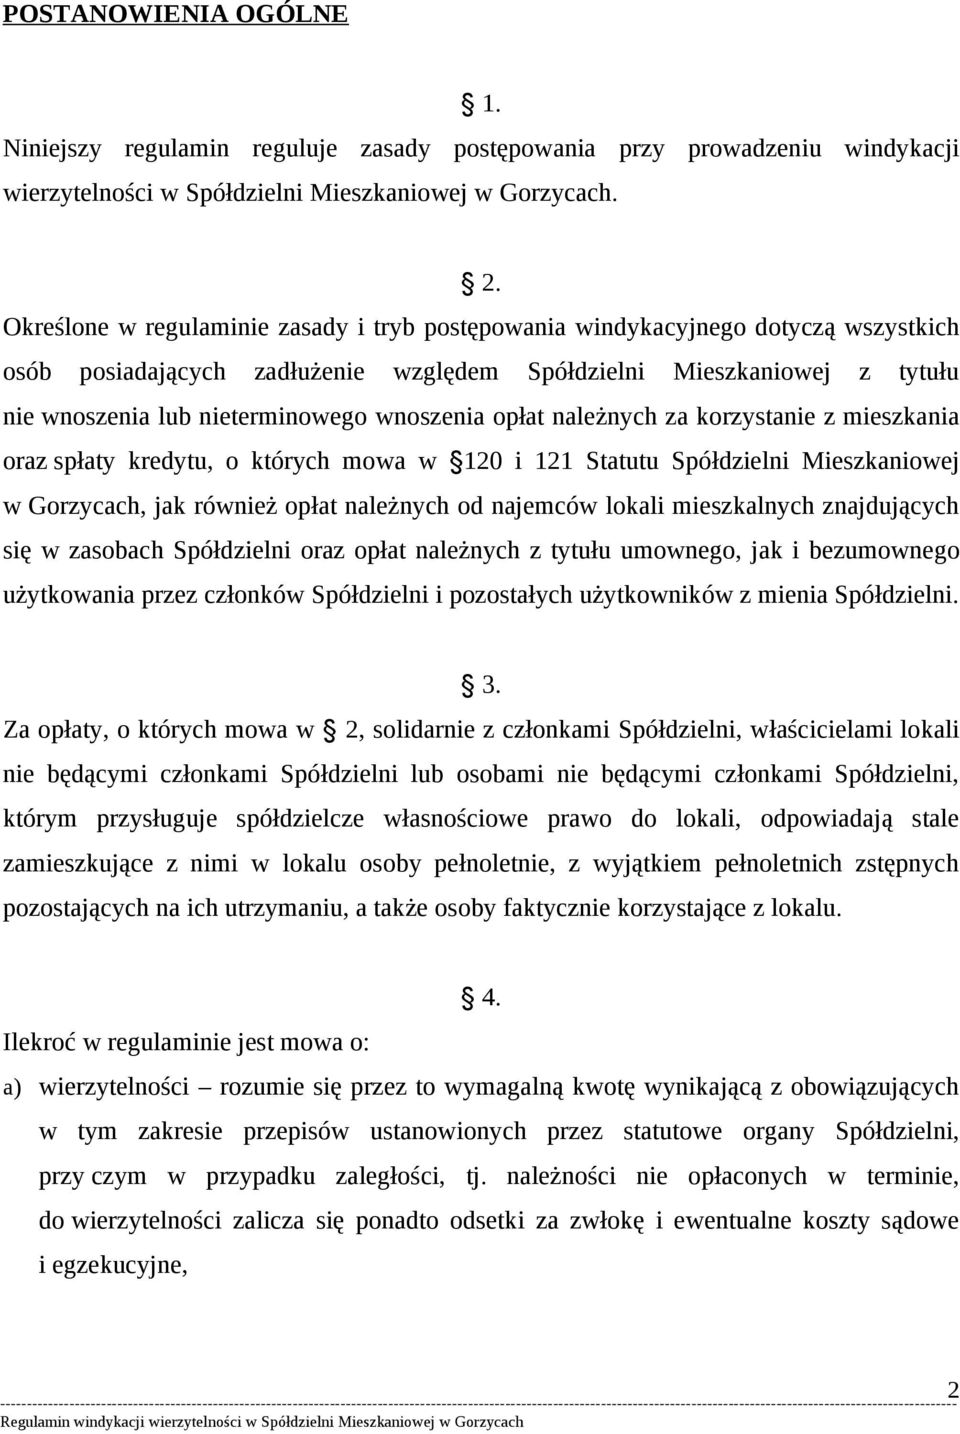 wnoszenia opłat należnych za korzystanie z mieszkania oraz spłaty kredytu, o których mowa w 120 i 121 Statutu Spółdzielni Mieszkaniowej w Gorzycach, jak również opłat należnych od najemców lokali